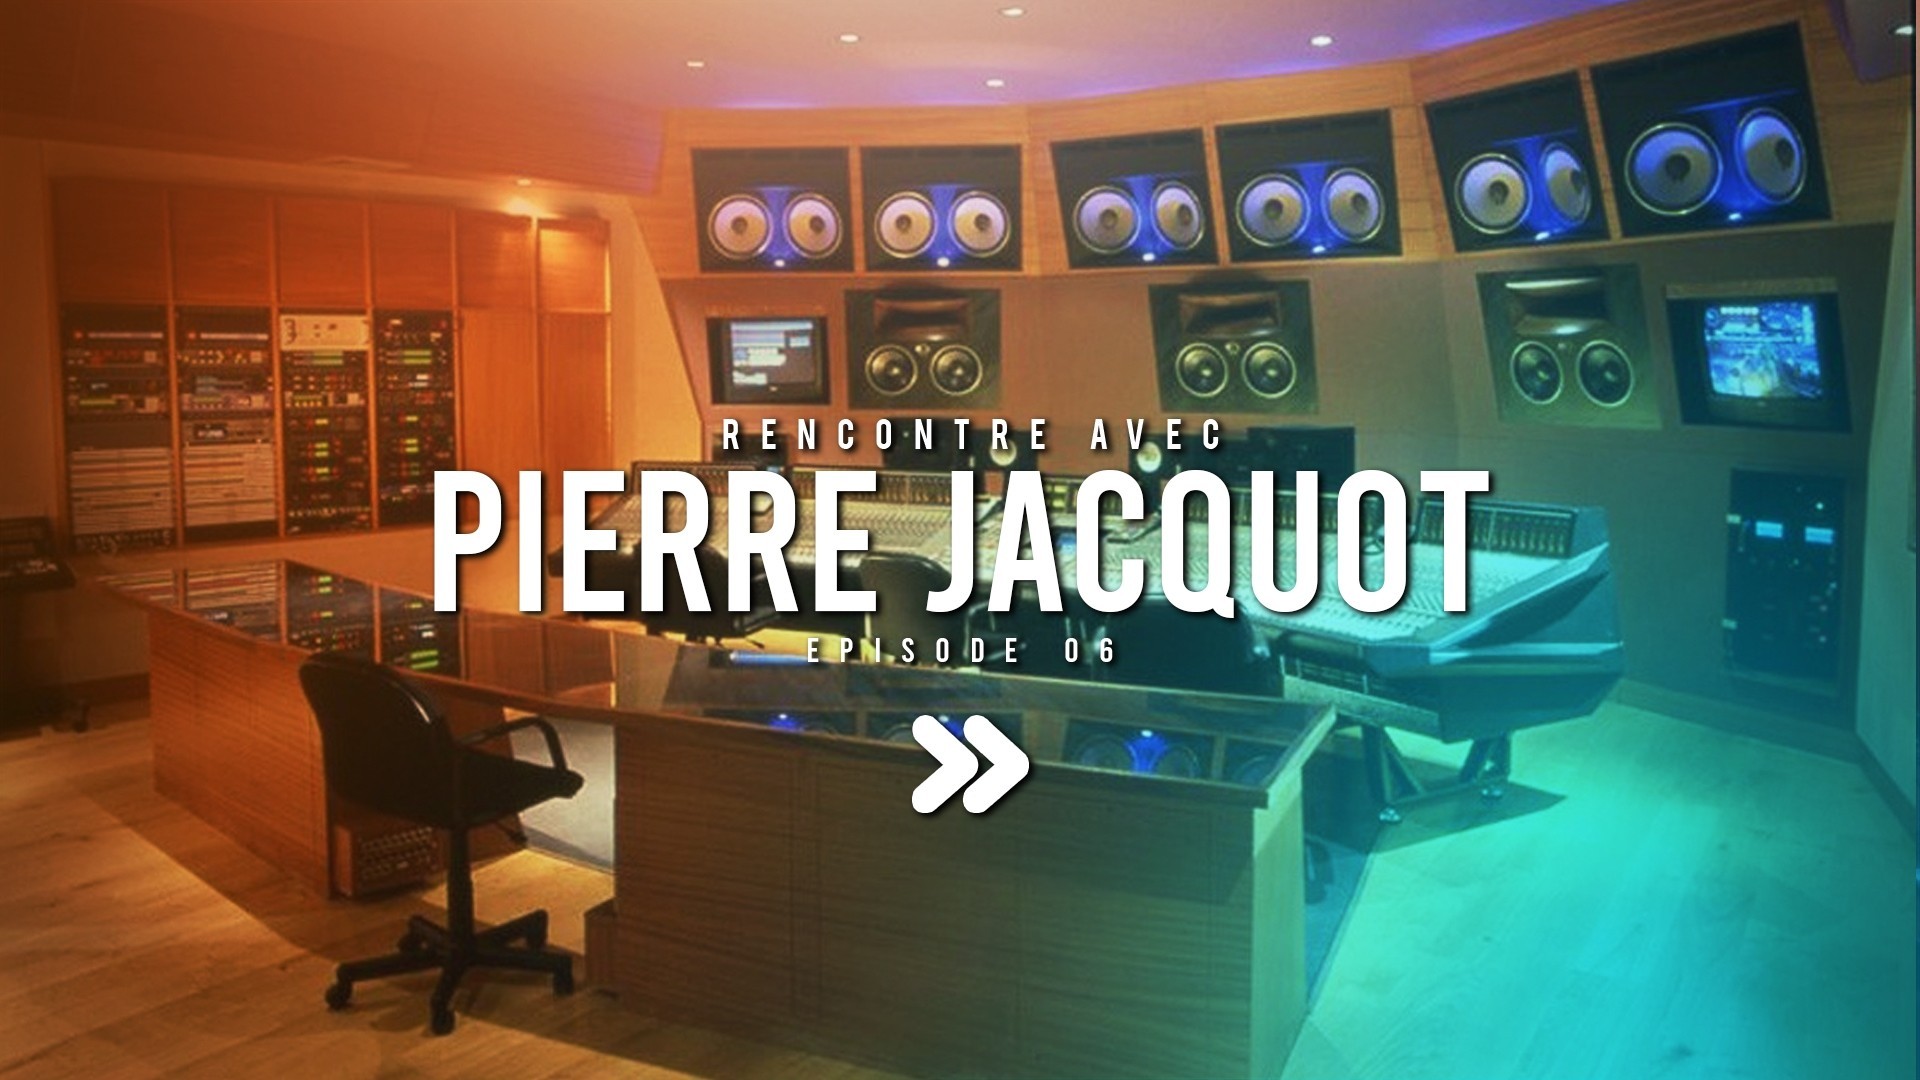 Rencontre avec Pierre Jacquot